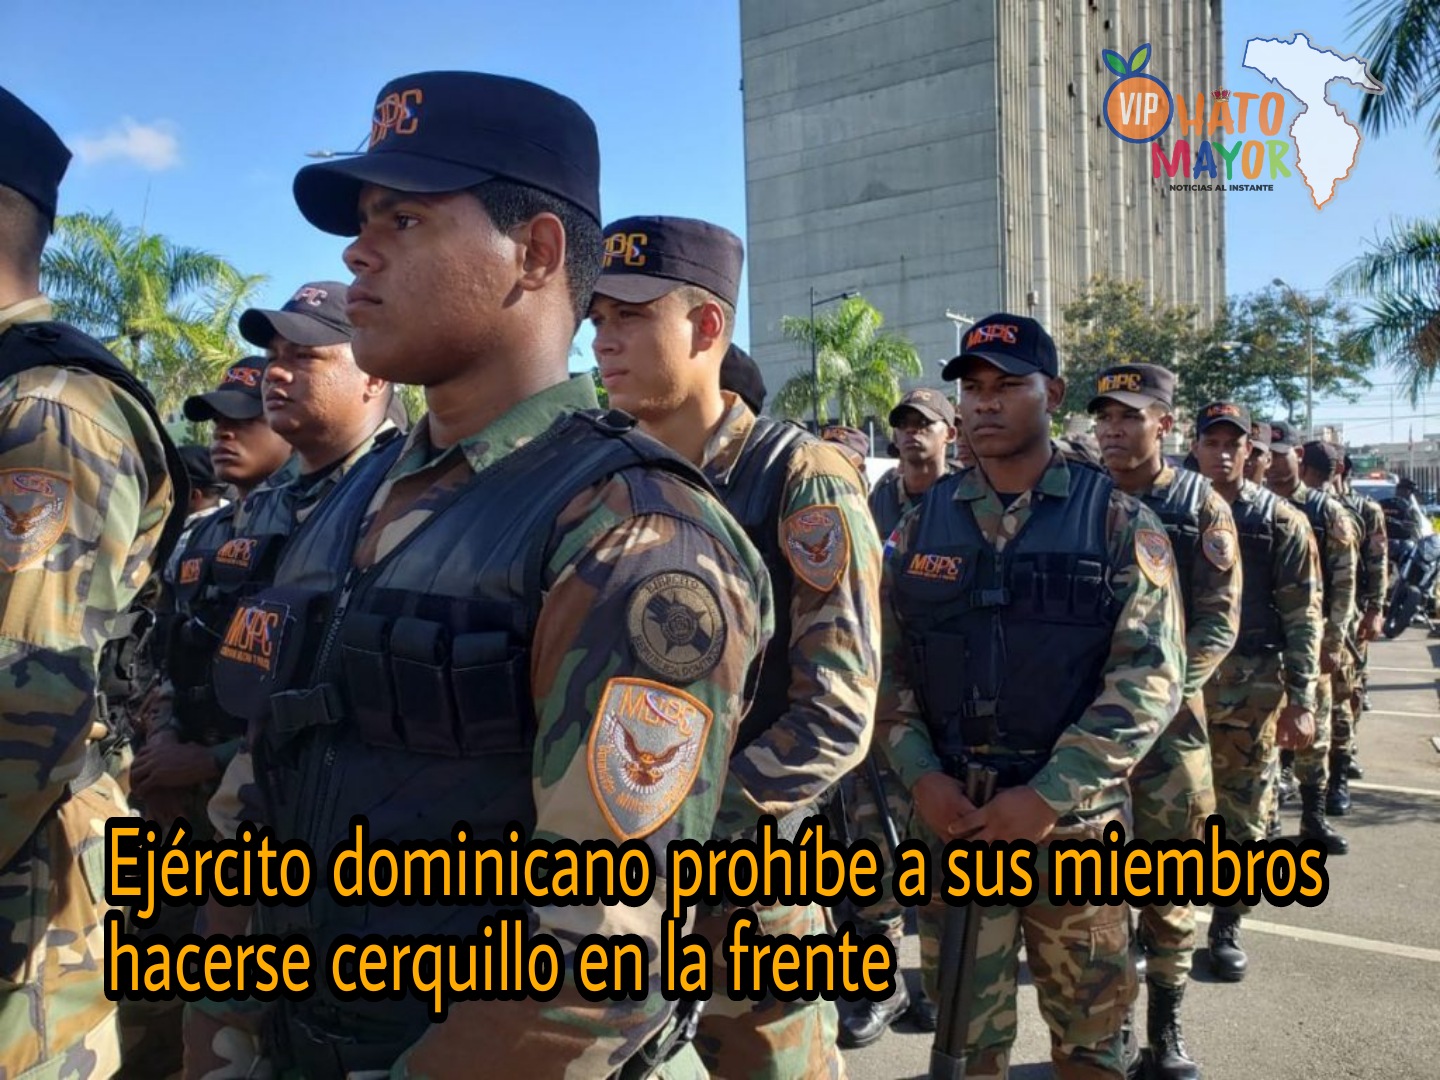 Les prohíben a miembros del Ejército dominicano hacerse cerquillo en la frente